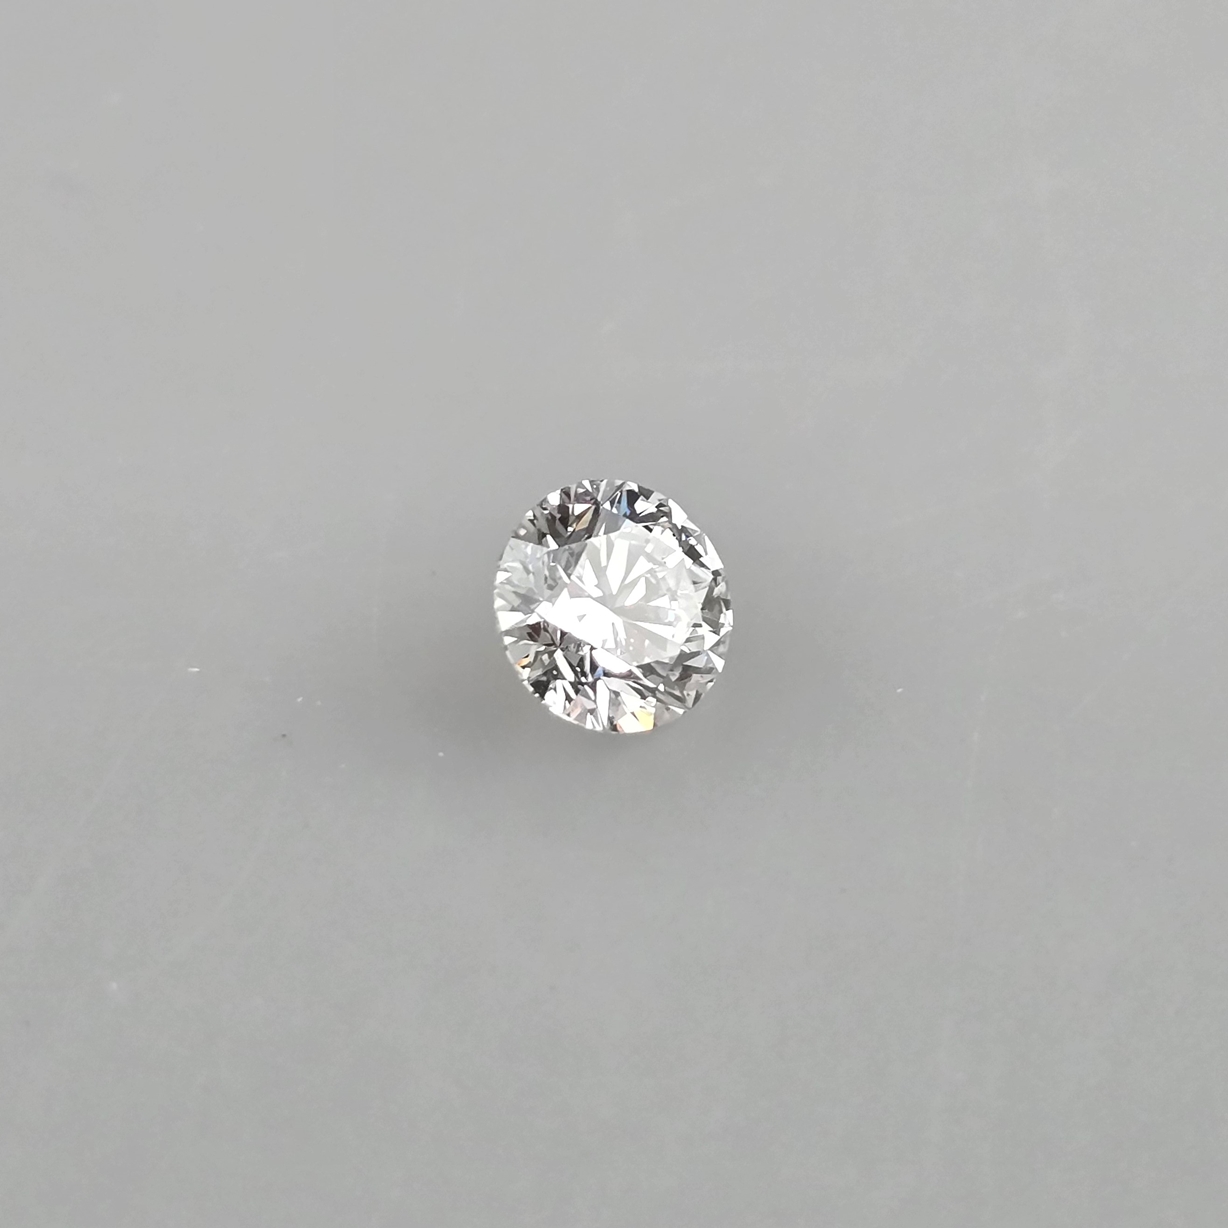 Loser Diamant von 2,00 ct. mit Lasersignatur - Labor-Brillant von exzellenter Qualität, Gewicht 2,0 - Image 2 of 8